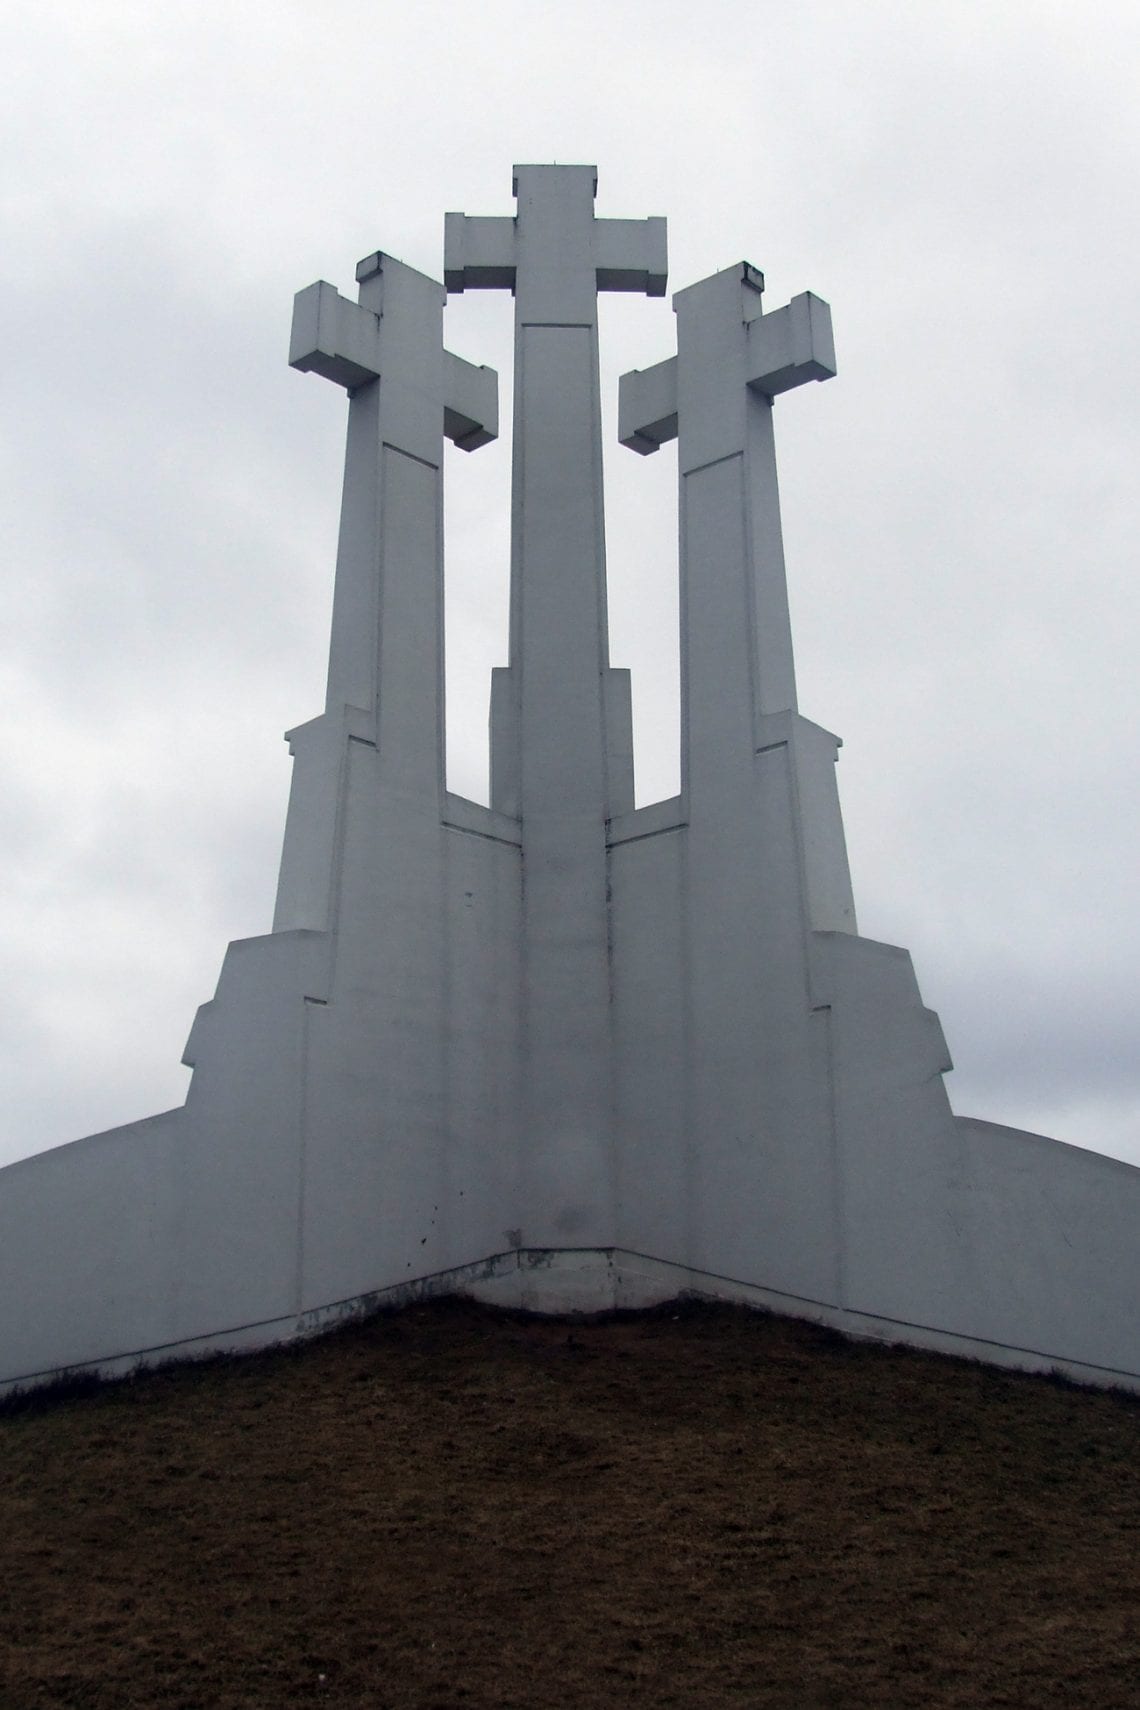 vilnius hill of 3 crosses